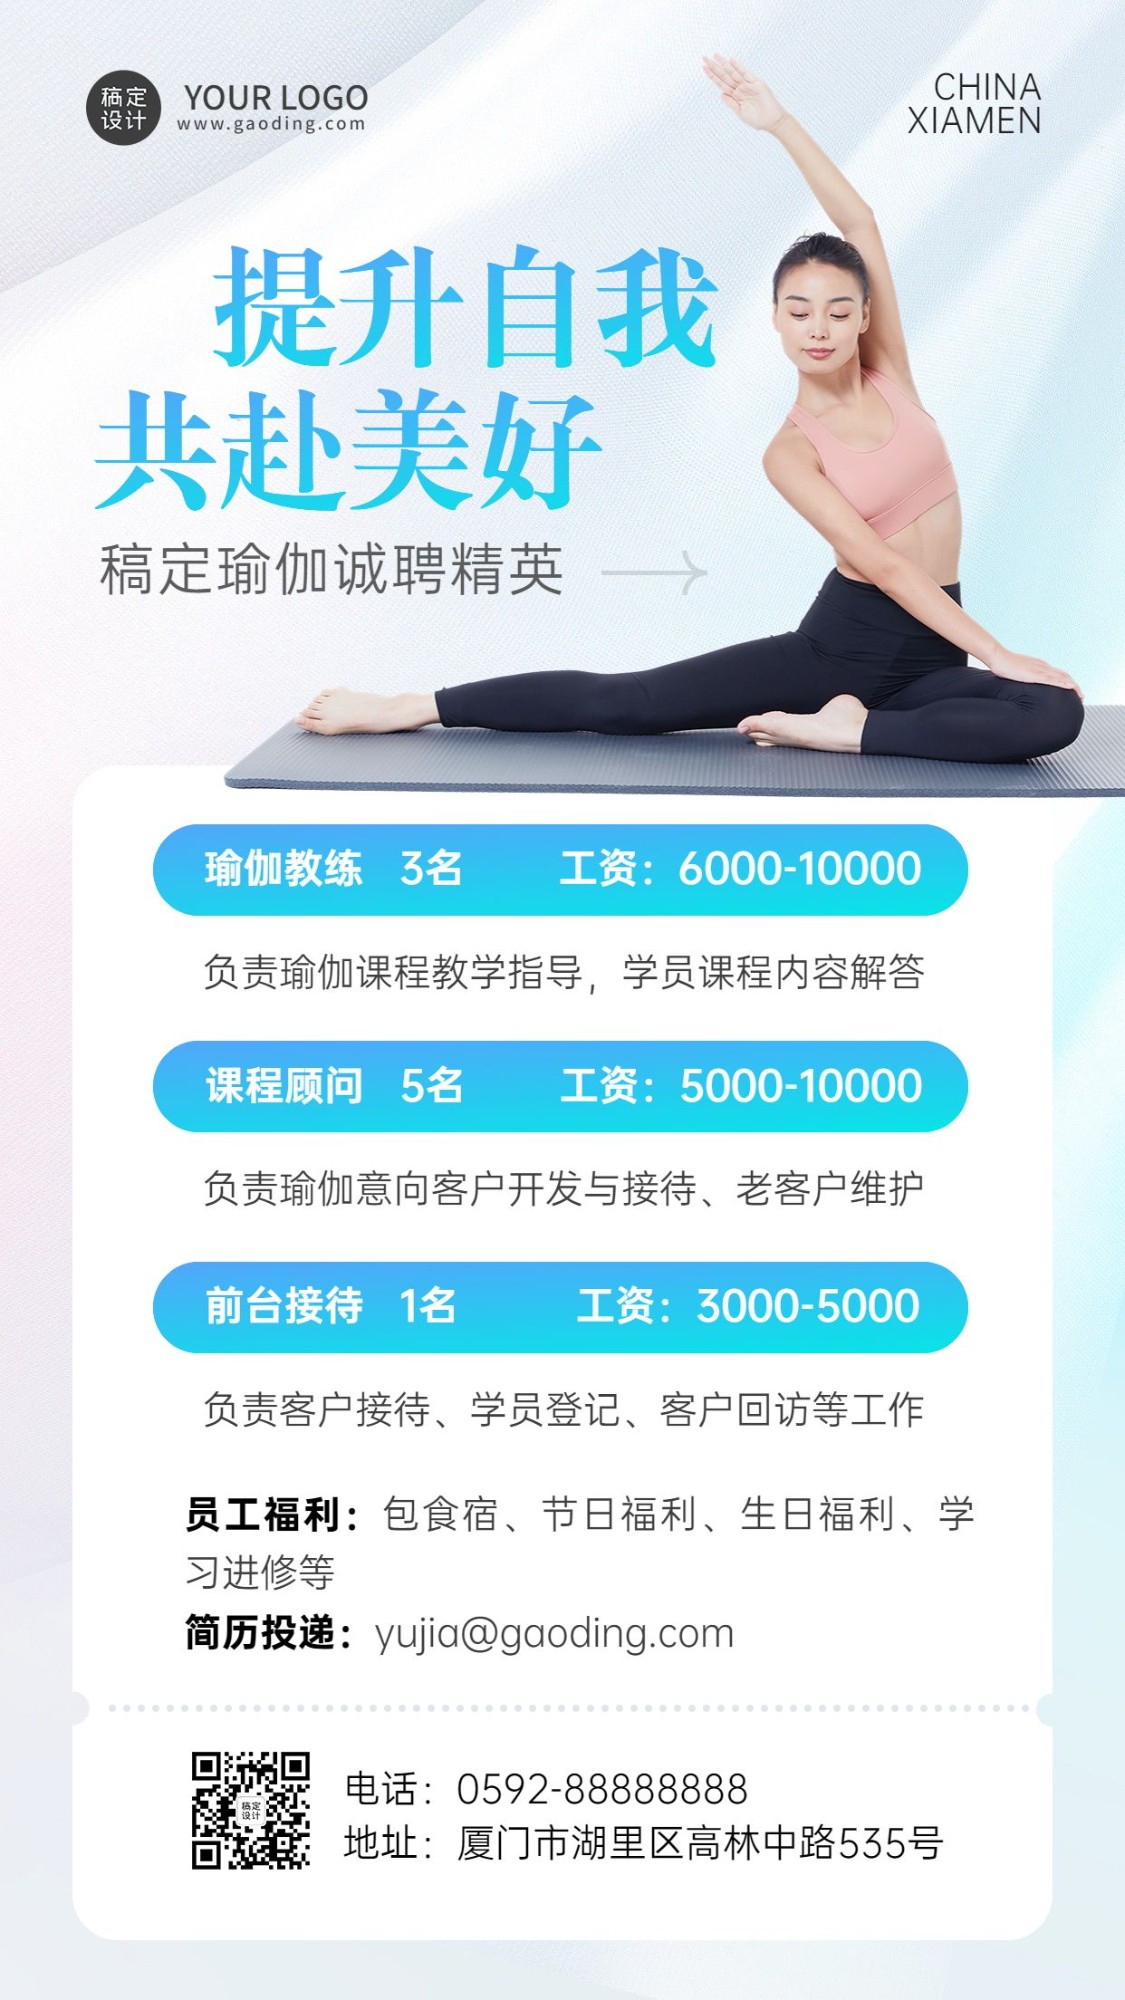 运动健身瑜伽馆求职招聘宣传手机海报